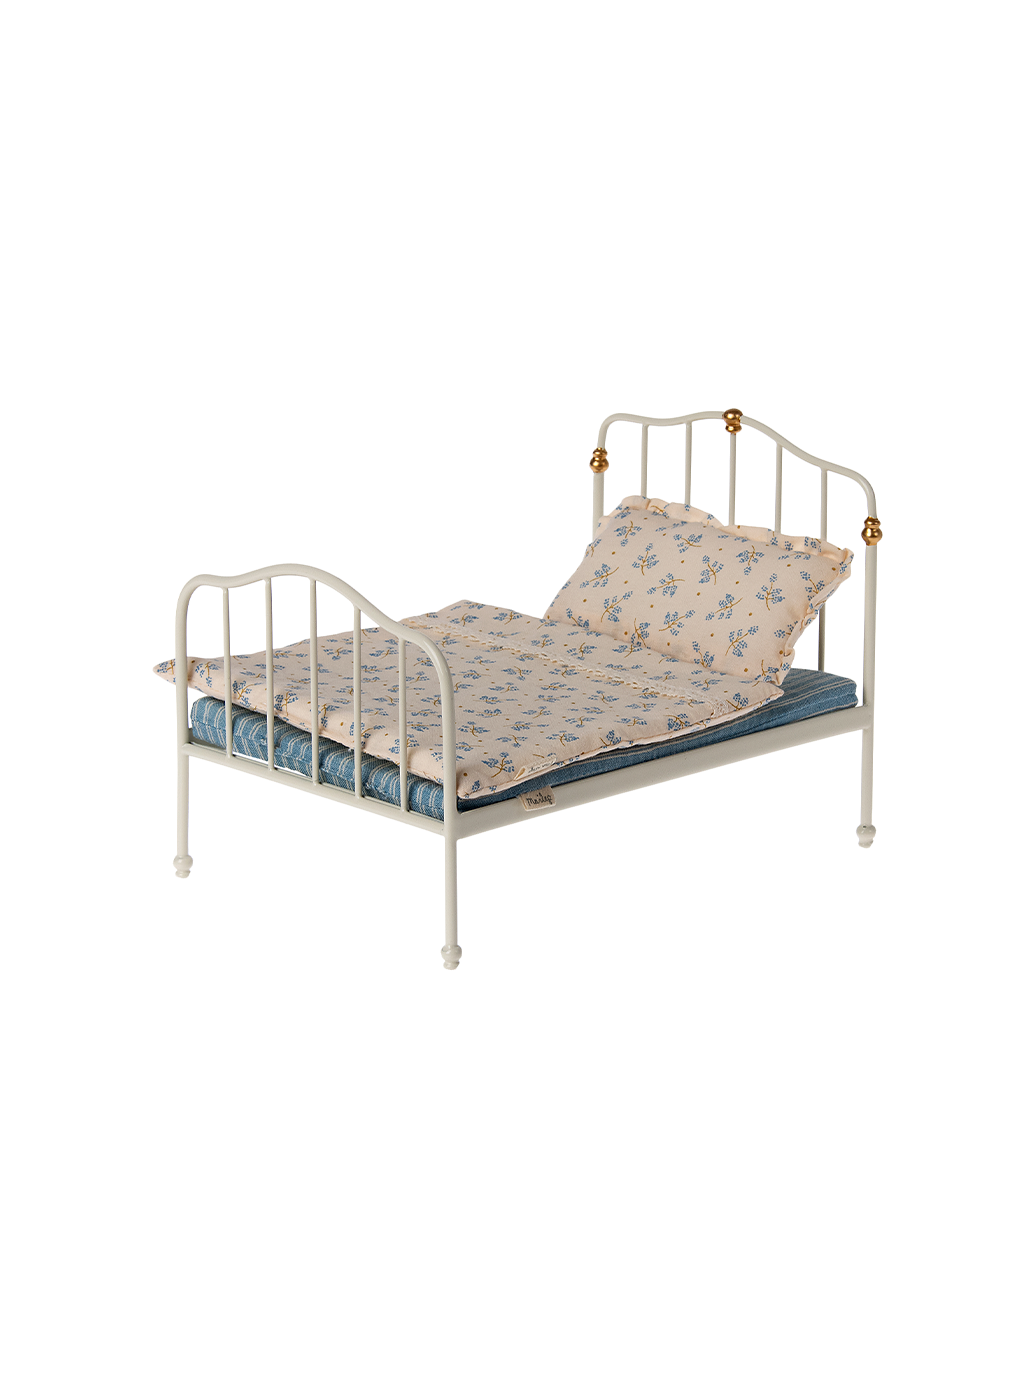 Miniaturowe podwójne łóżko w stylu vintage